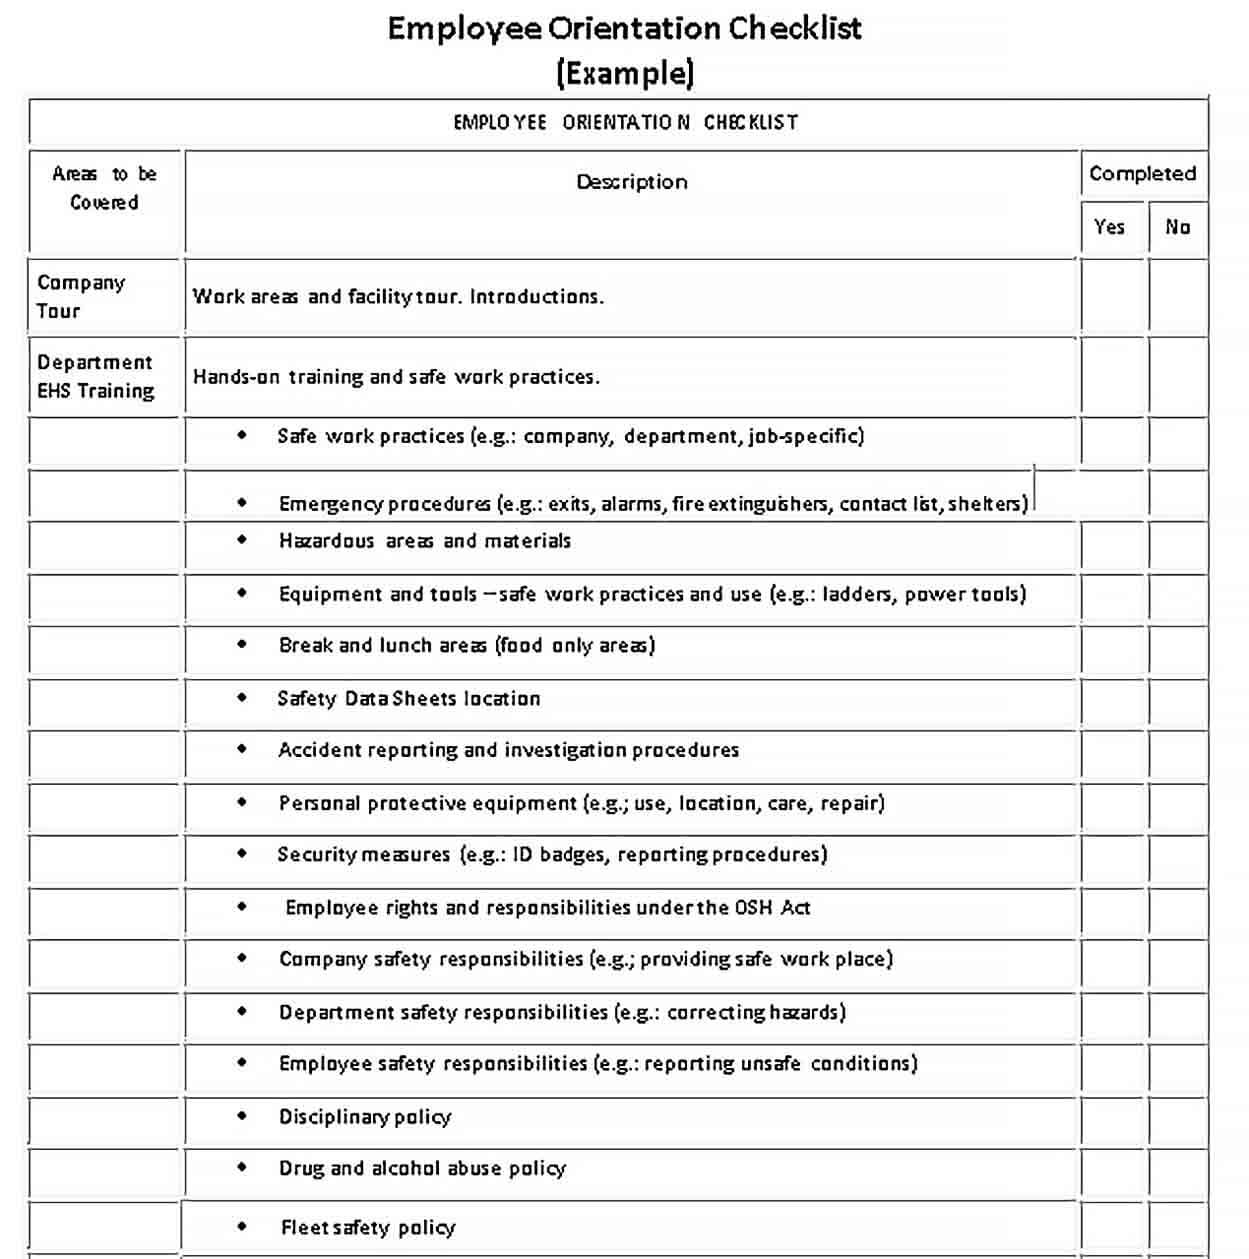 Sample Employee Orientation Checklist